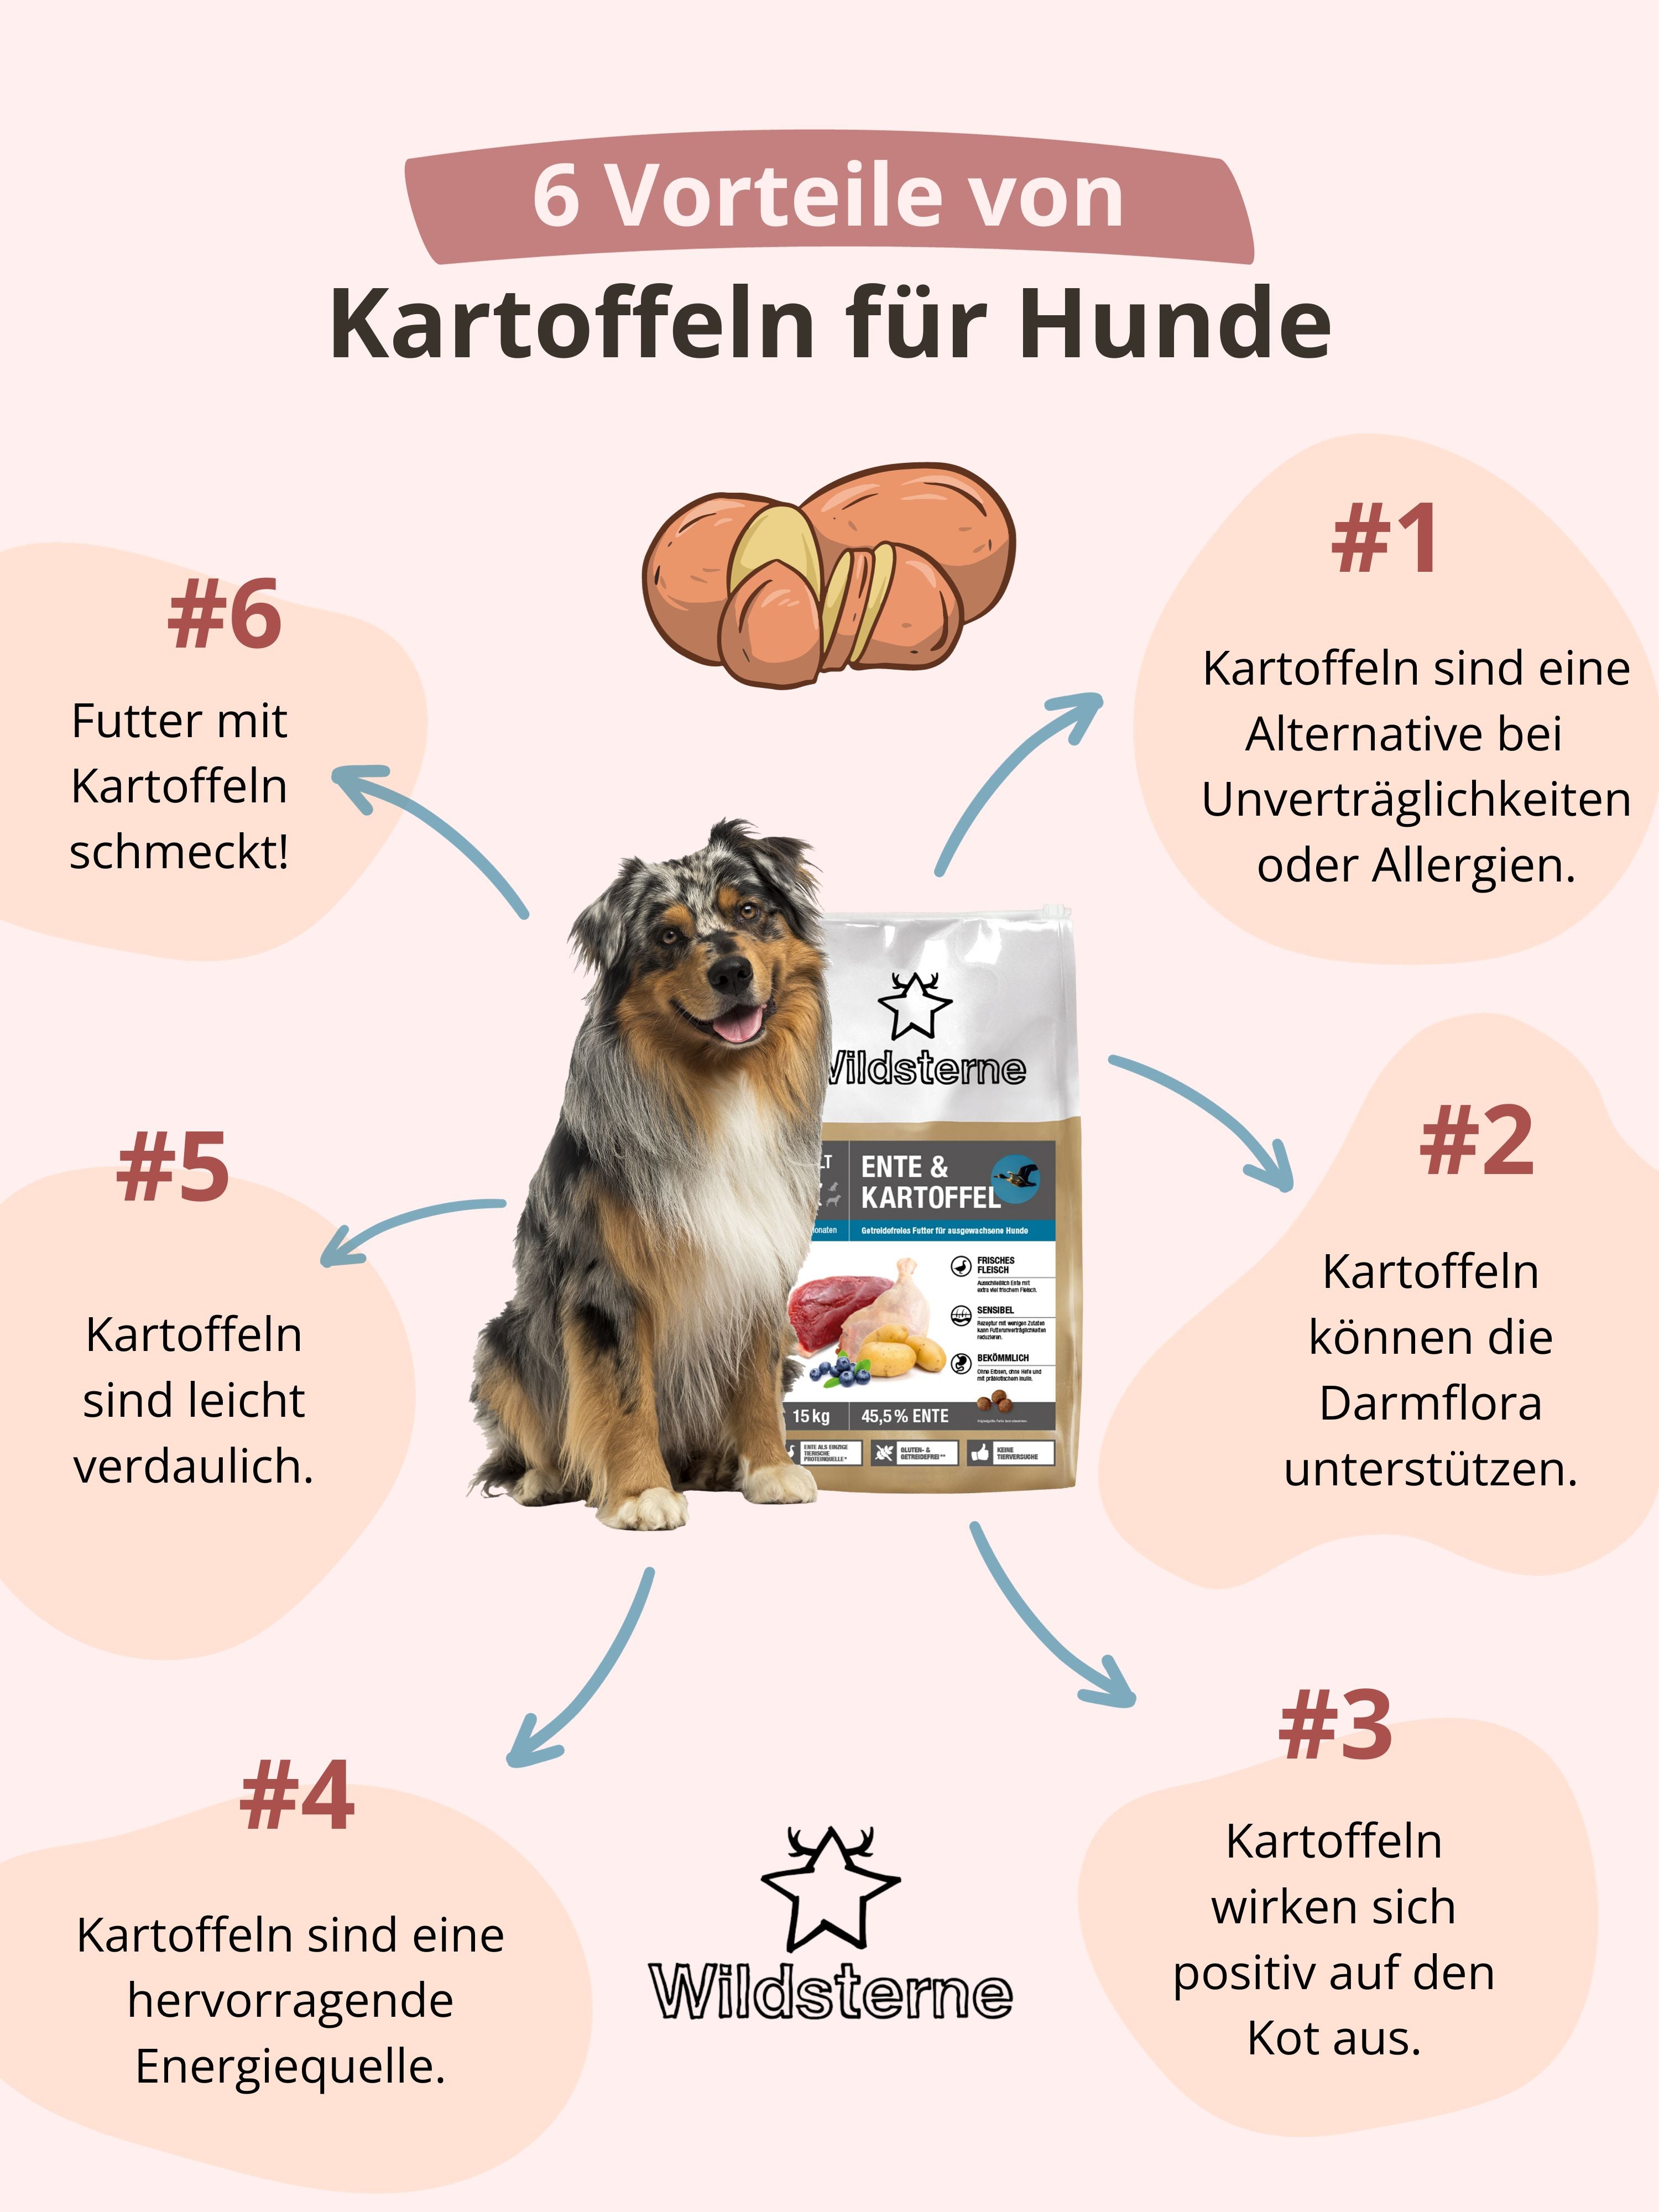 Infografik, die 6 Vorteile von Kartoffeln für Hunde erläutert.